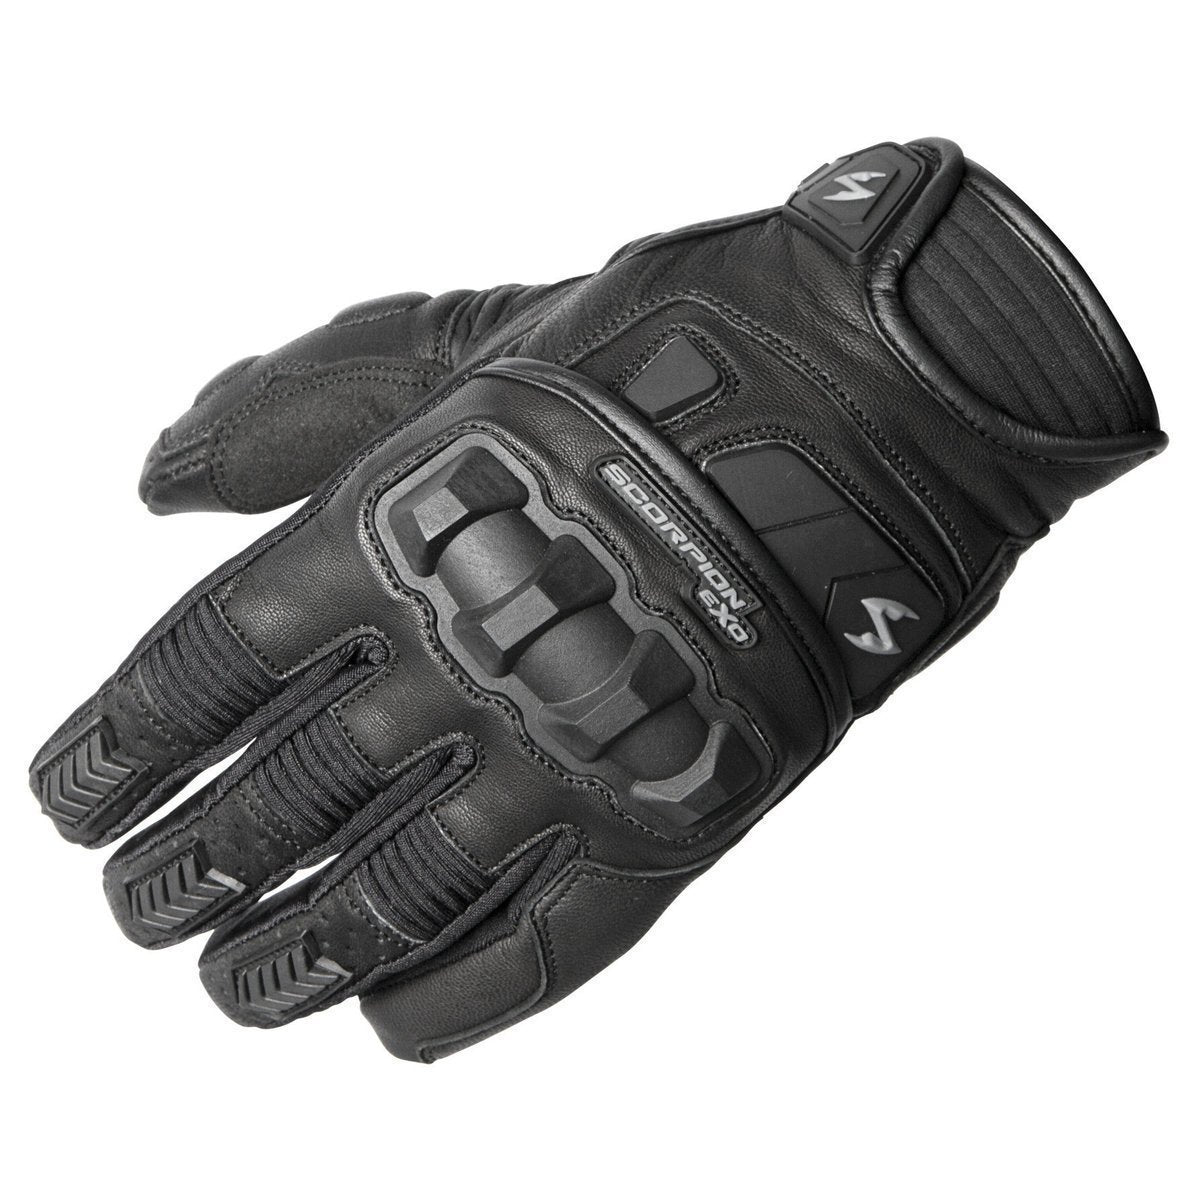 Scorpion Klaw II Black Leather Gloves